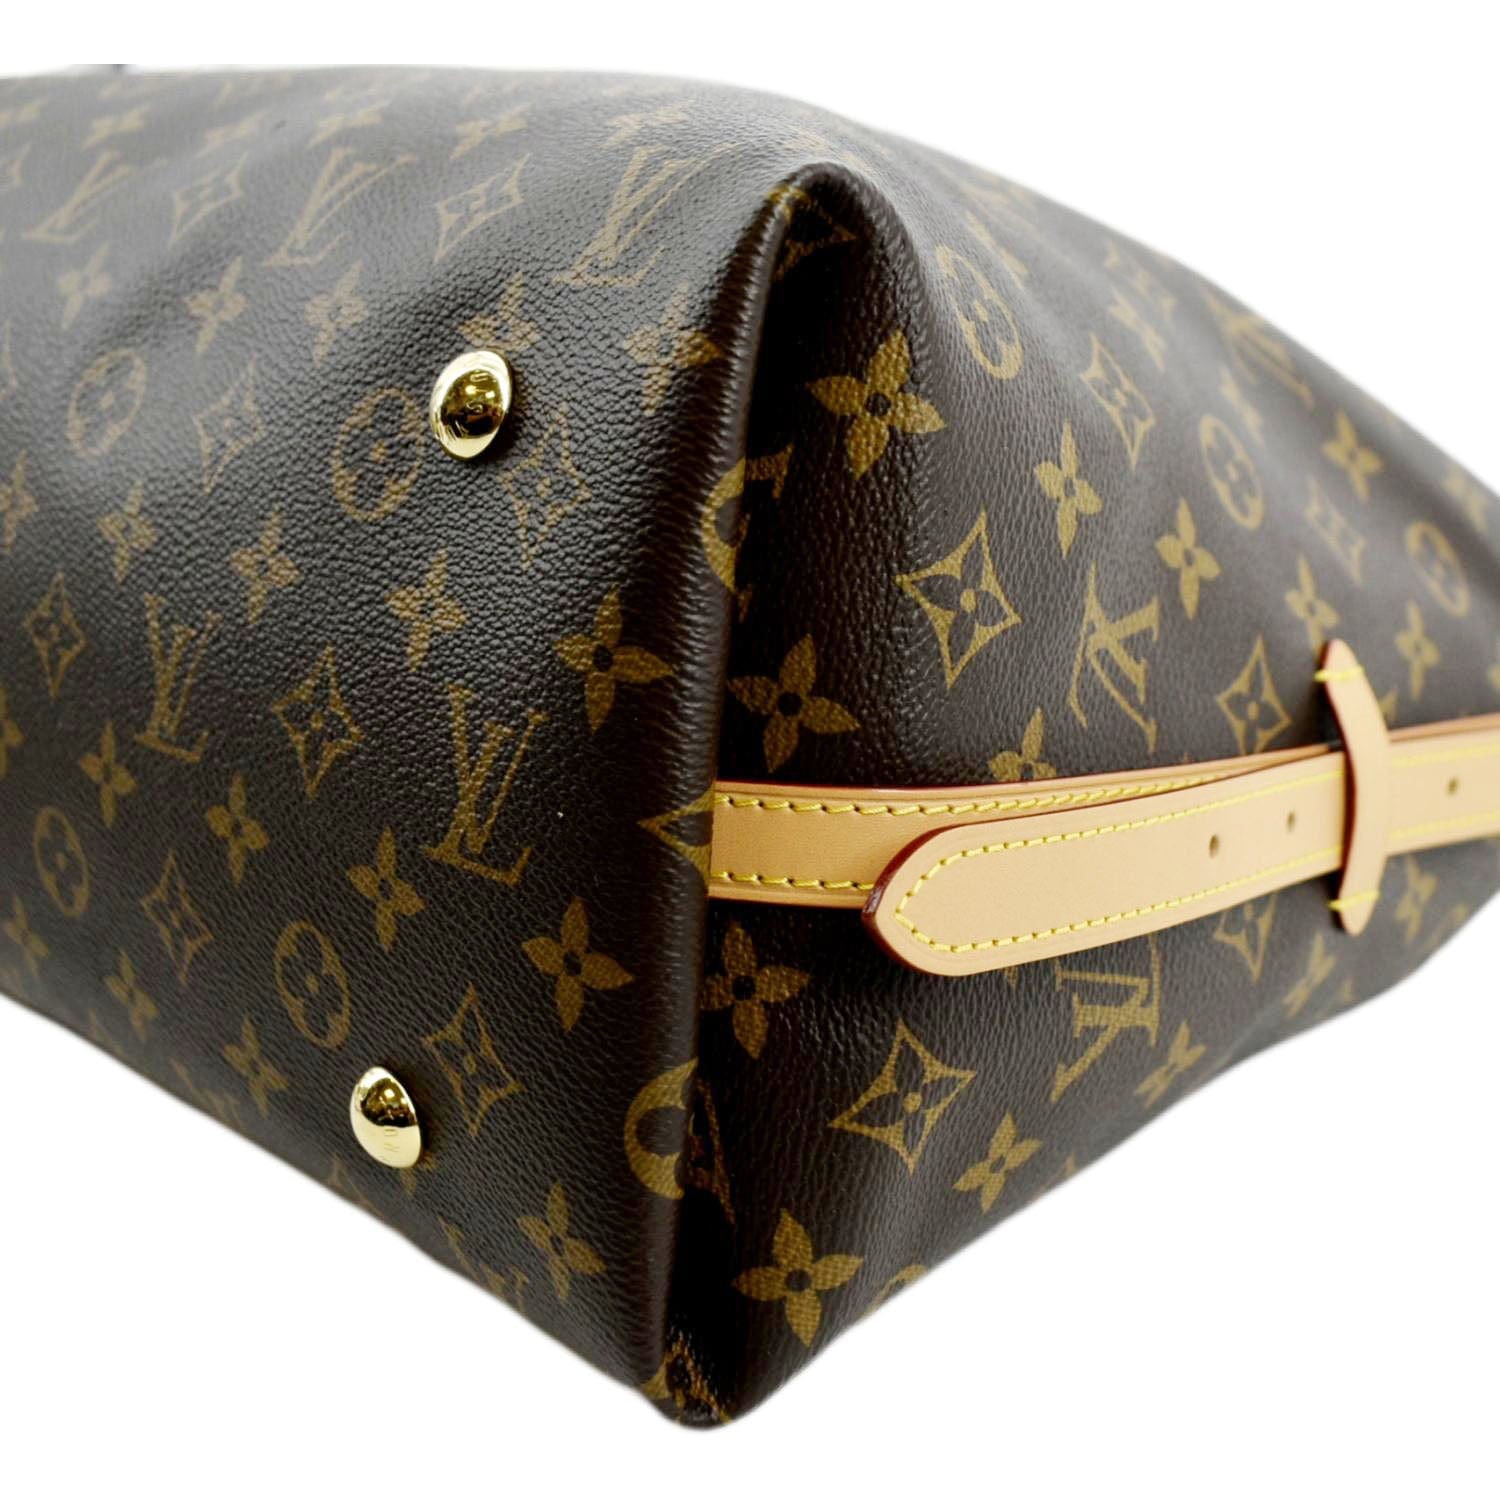 Louis Vuitton Carryall mm Monogram Canvas Shoulder Bag Brown